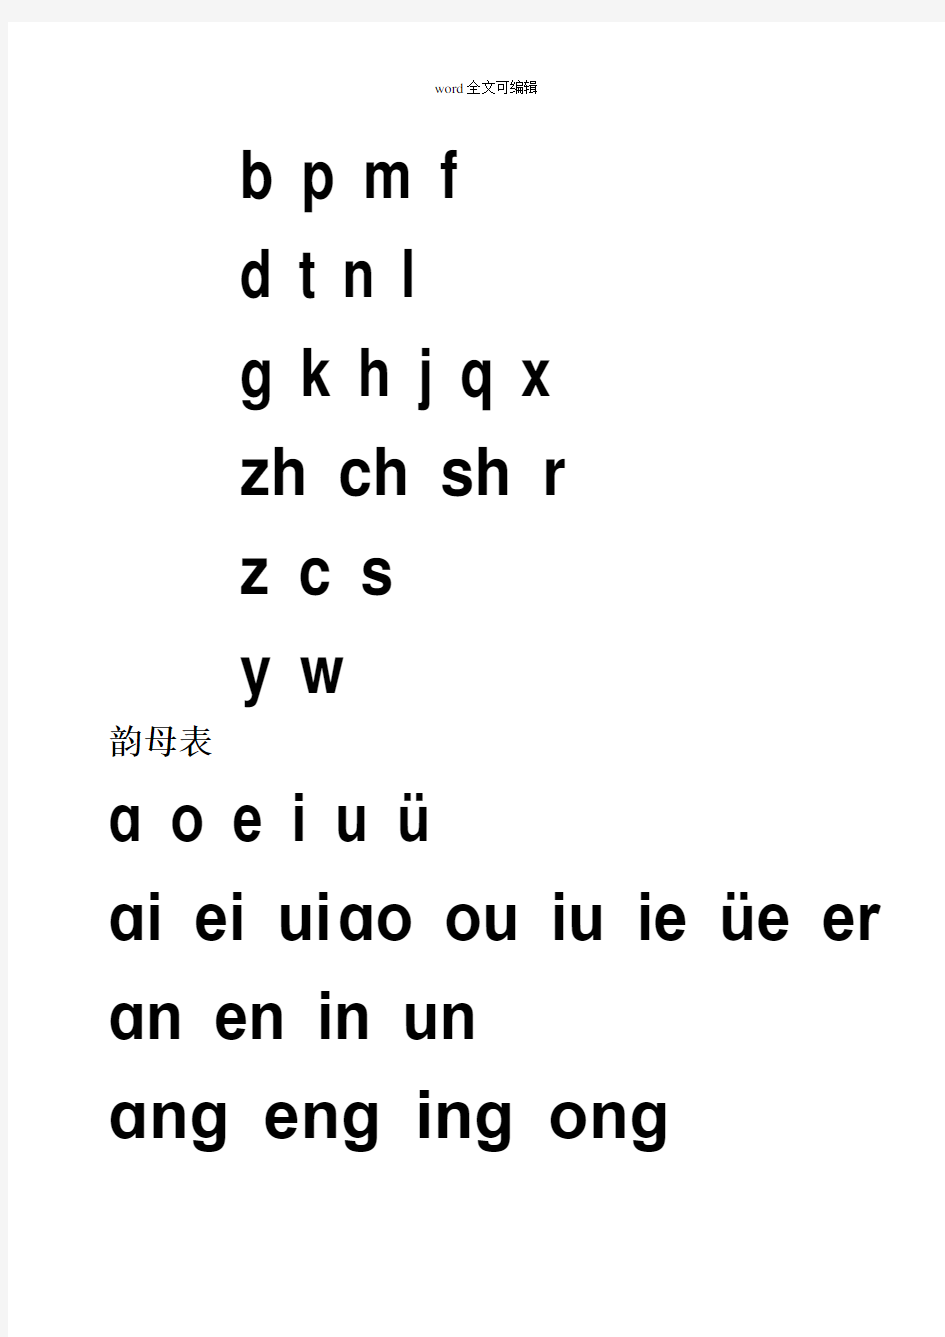 汉语拼音字母表及全音节表(打印版)